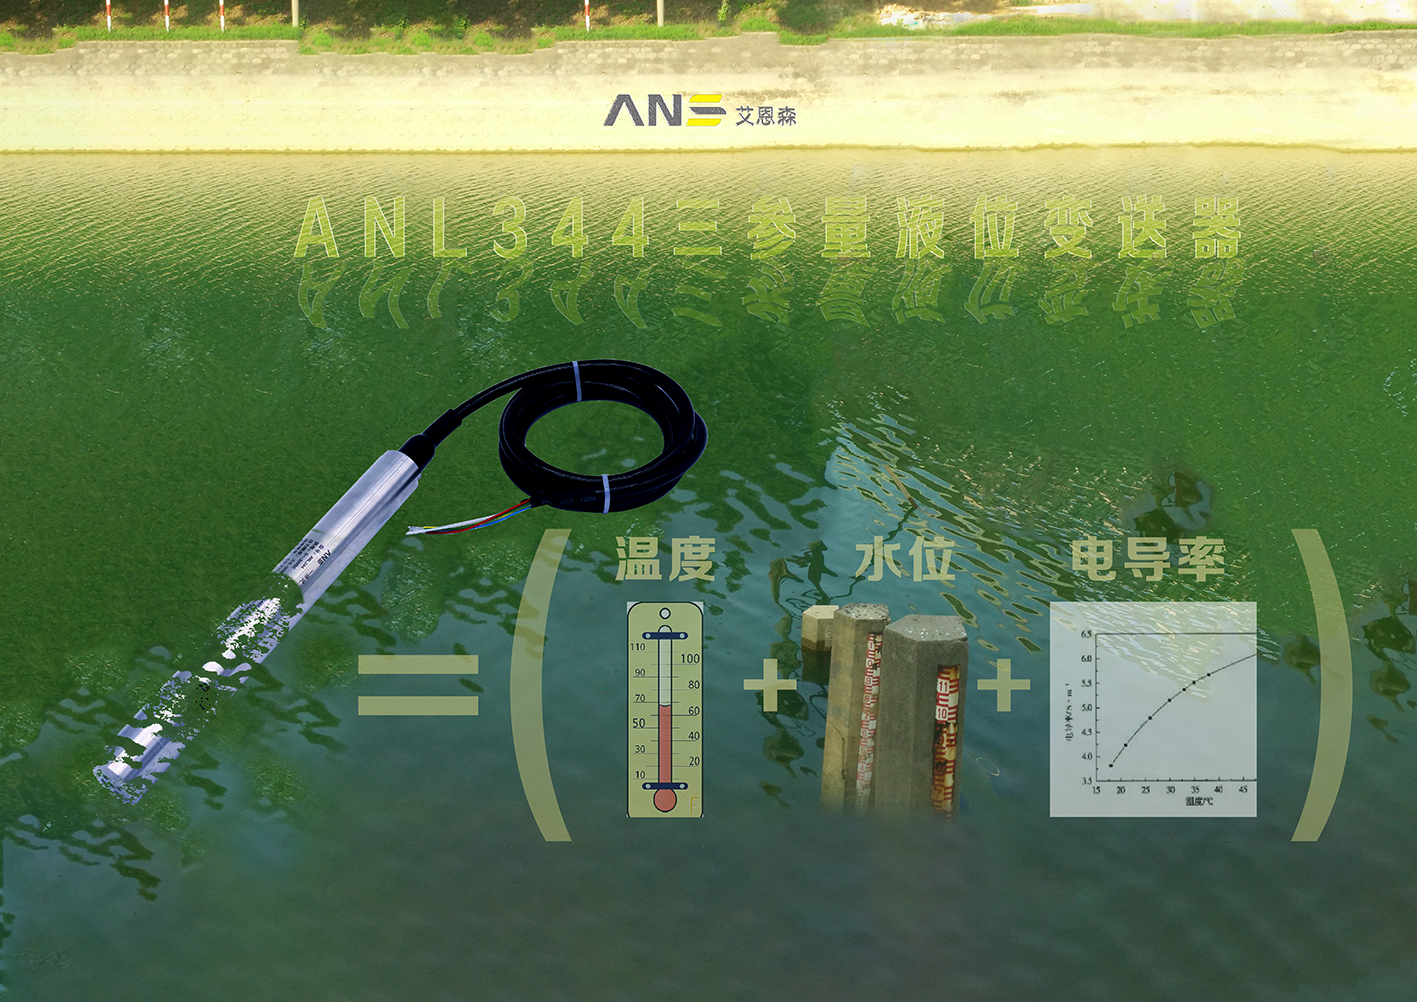 ANL344三参量液位变送器实现 水温、水位、电导率一体化采集